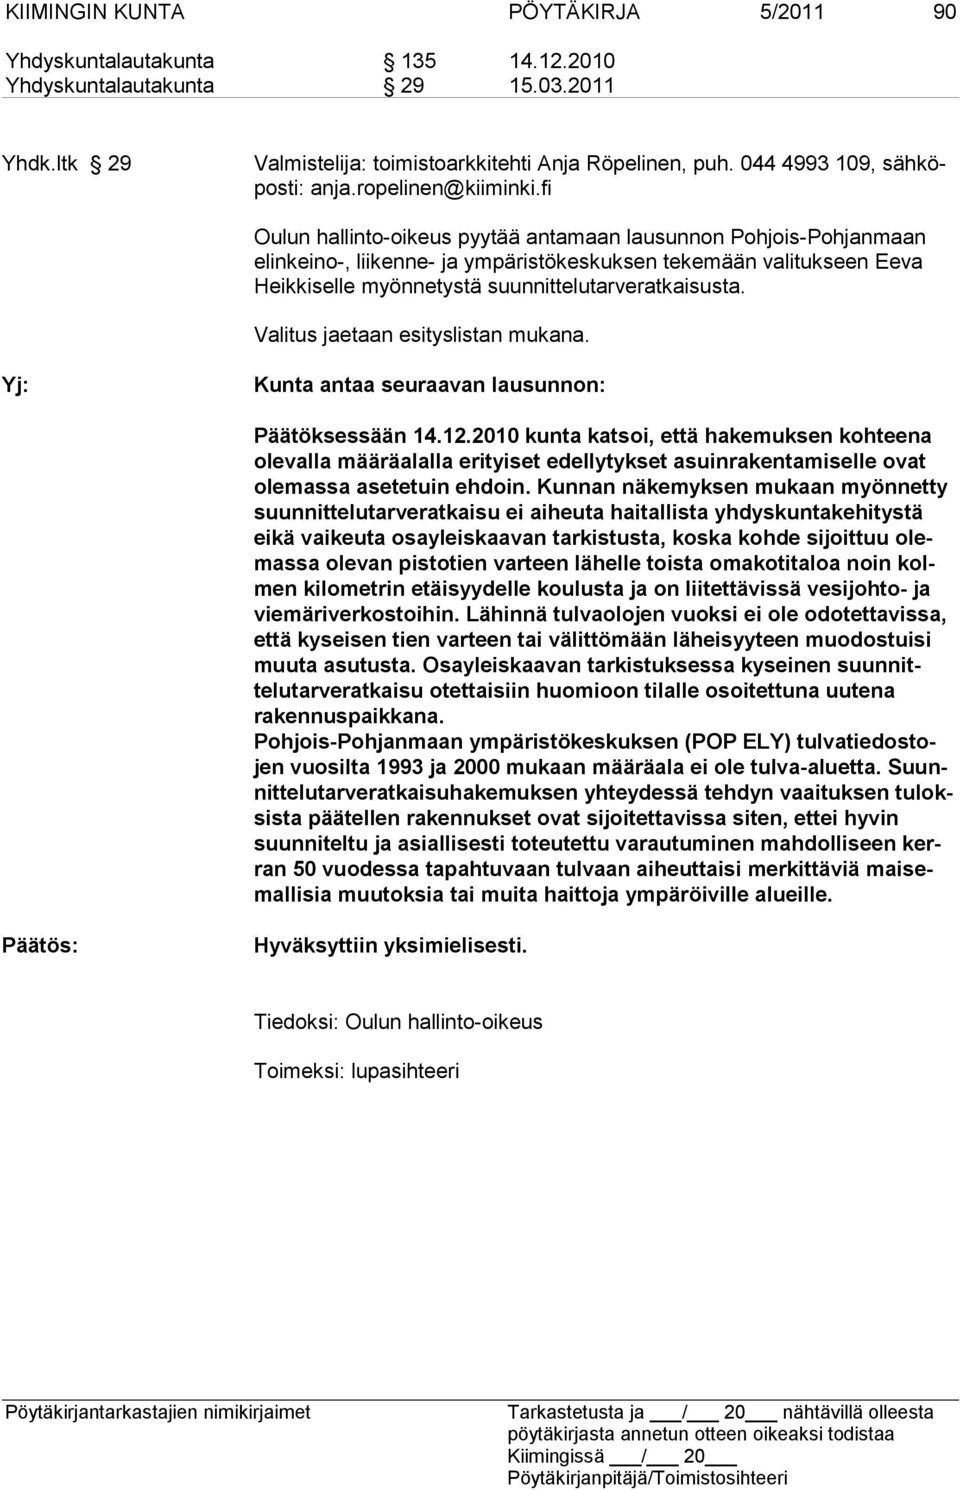 fi Oulun hallinto-oikeus pyytää antamaan lausunnon Pohjois-Pohjanmaan elinkeino-, liikenne- ja ympäristökeskuksen tekemään valitukseen Eeva Heikkiselle myönnetystä suunnittelutarveratkaisusta.